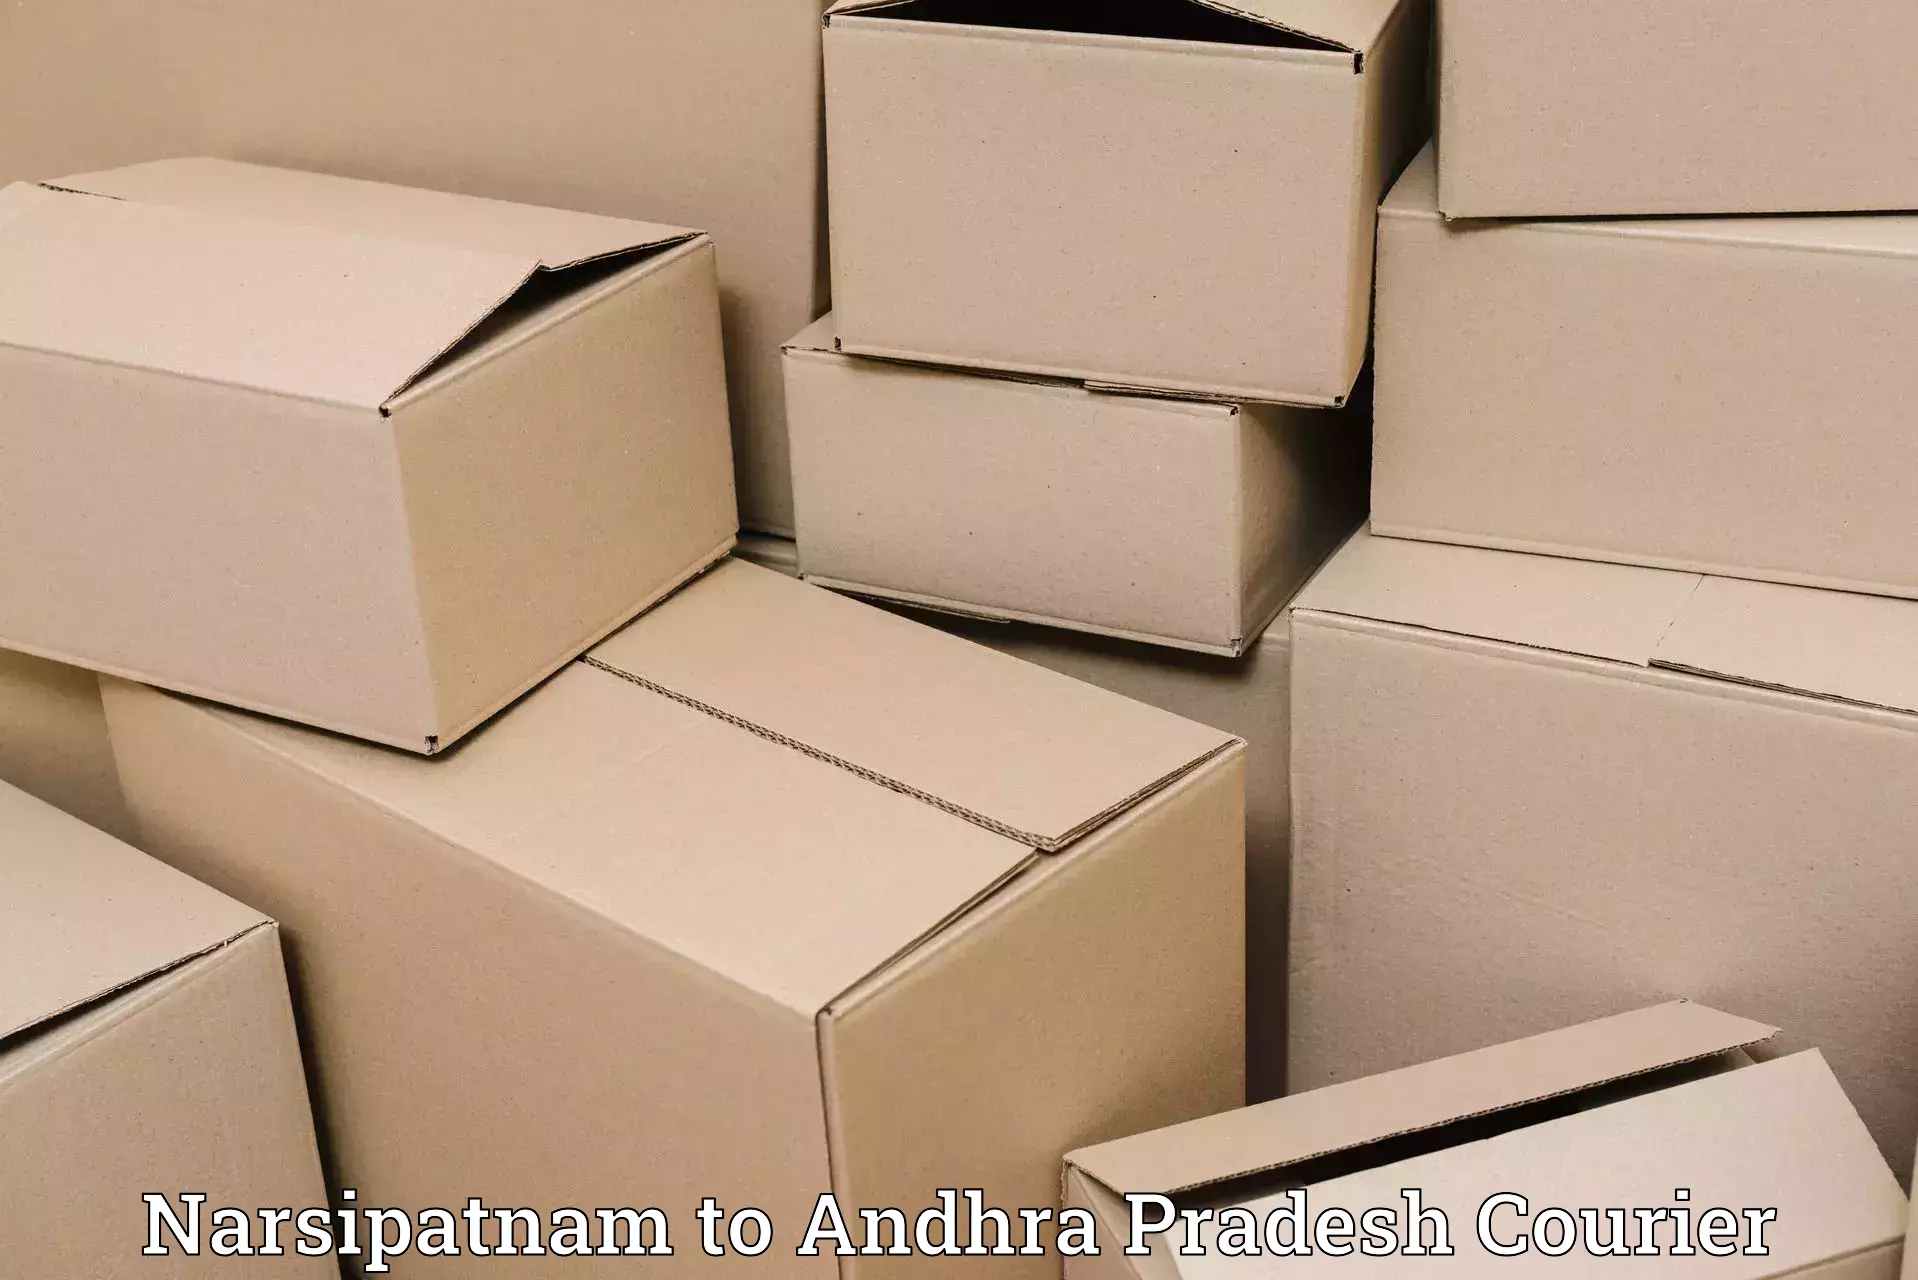 Large package courier Narsipatnam to Srikalahasti